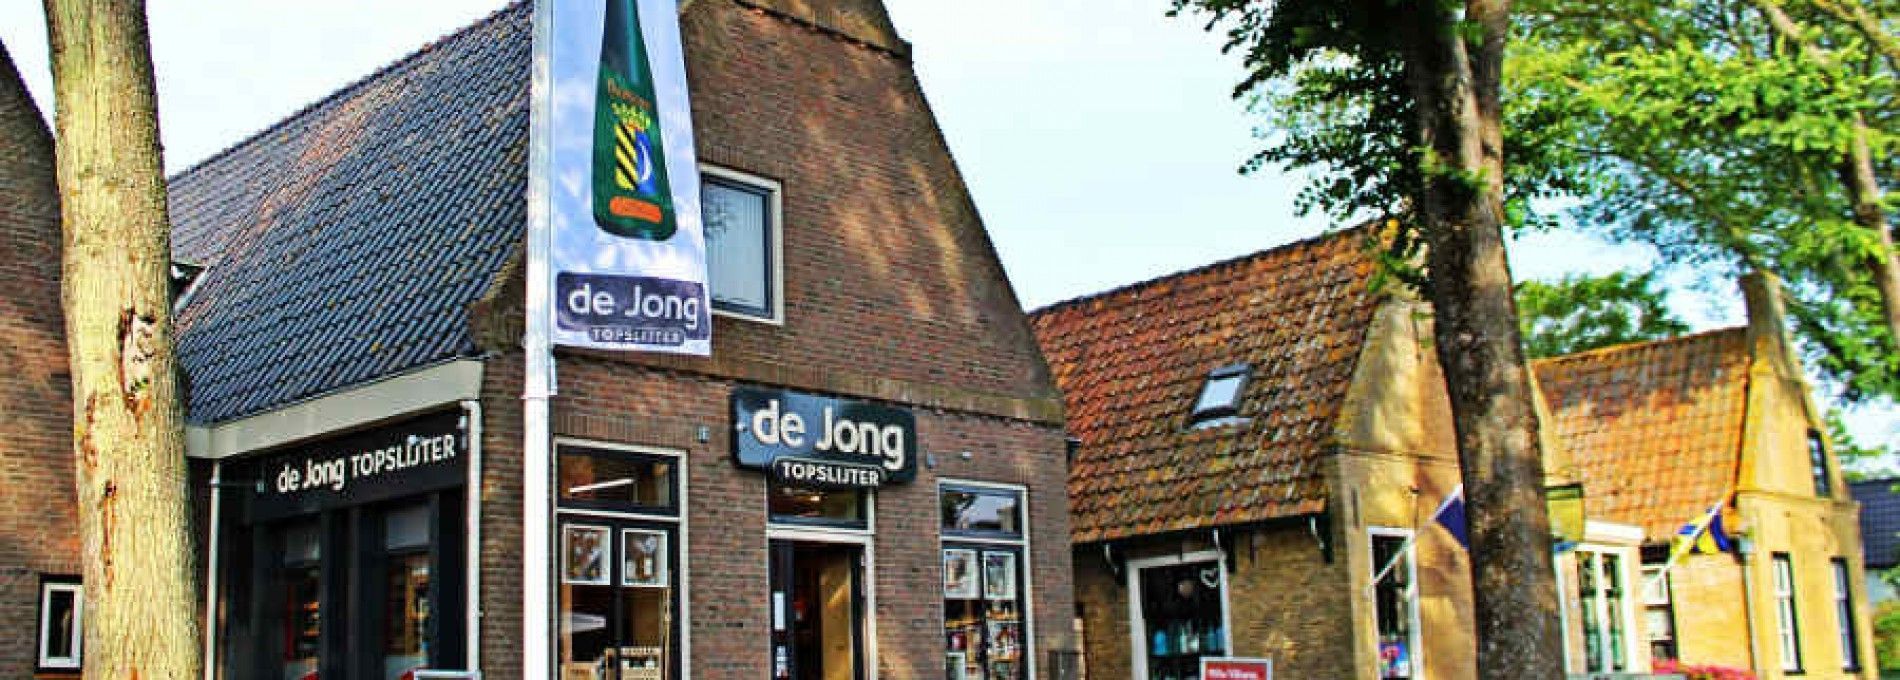 Wein- und Spirituosenhandlung TopSlijter De Jong Ameland